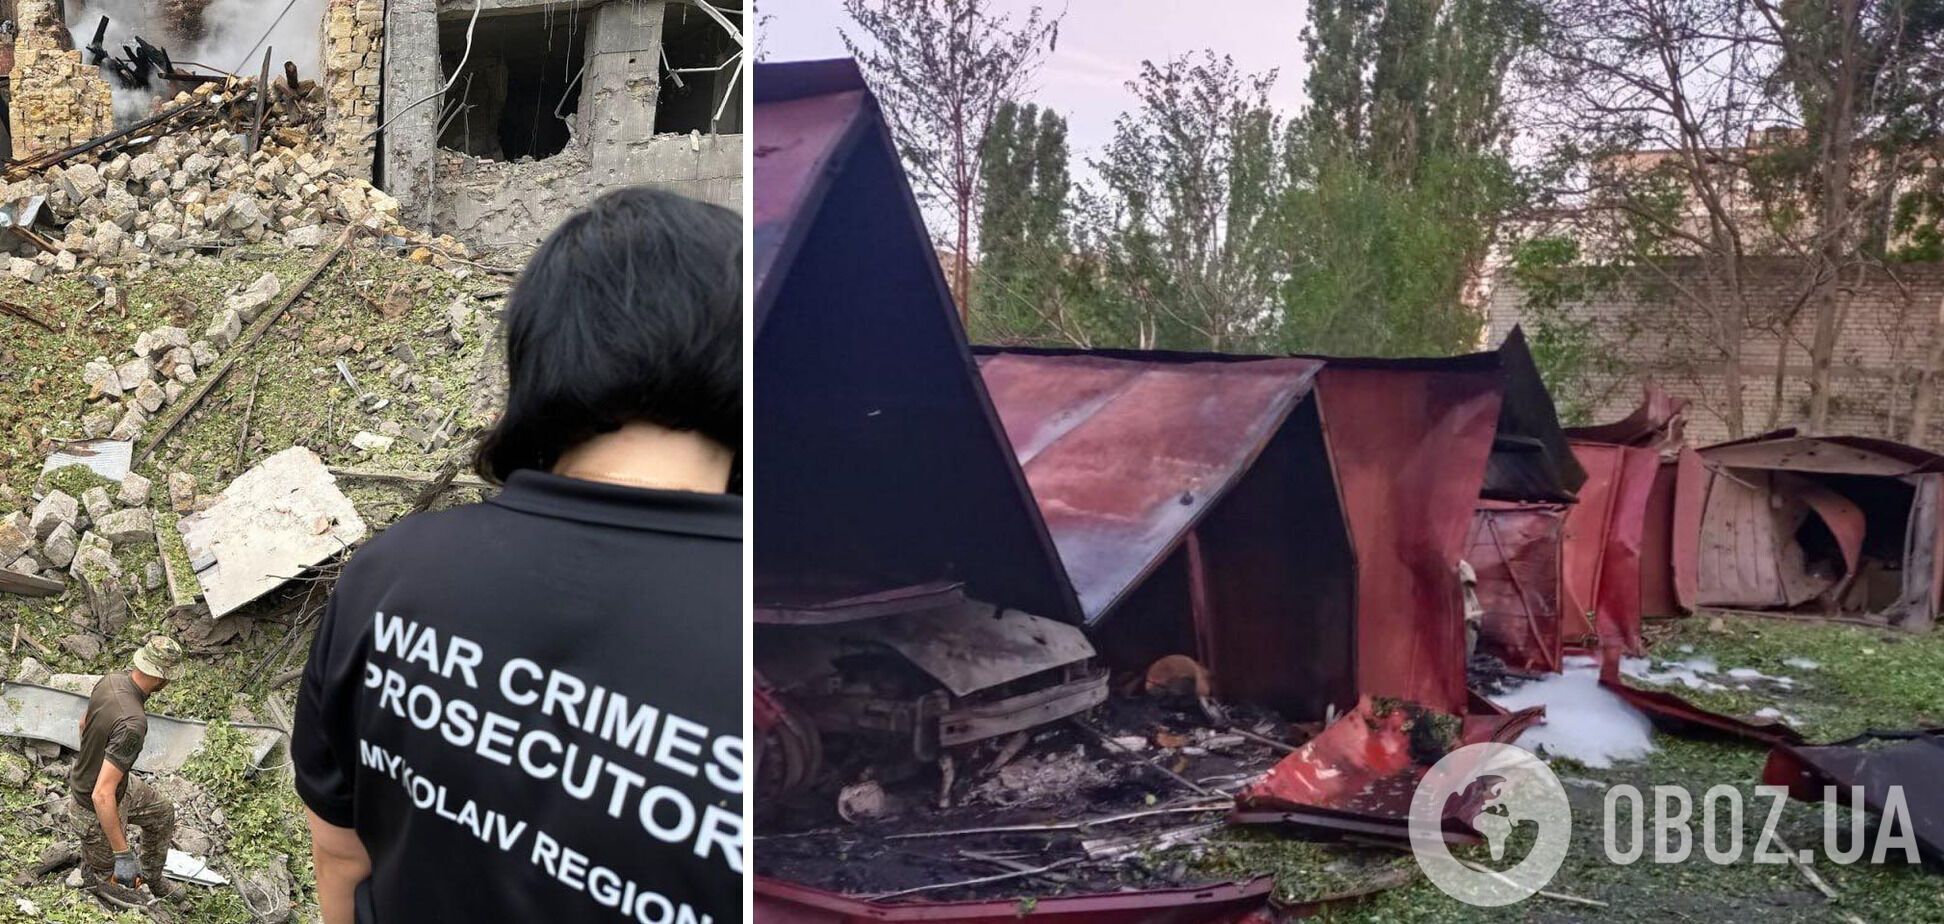  Війська РФ вночі вдарили по будинку у Миколаєві: загинуло подружжя, постраждало 19 осіб. Фото і відео